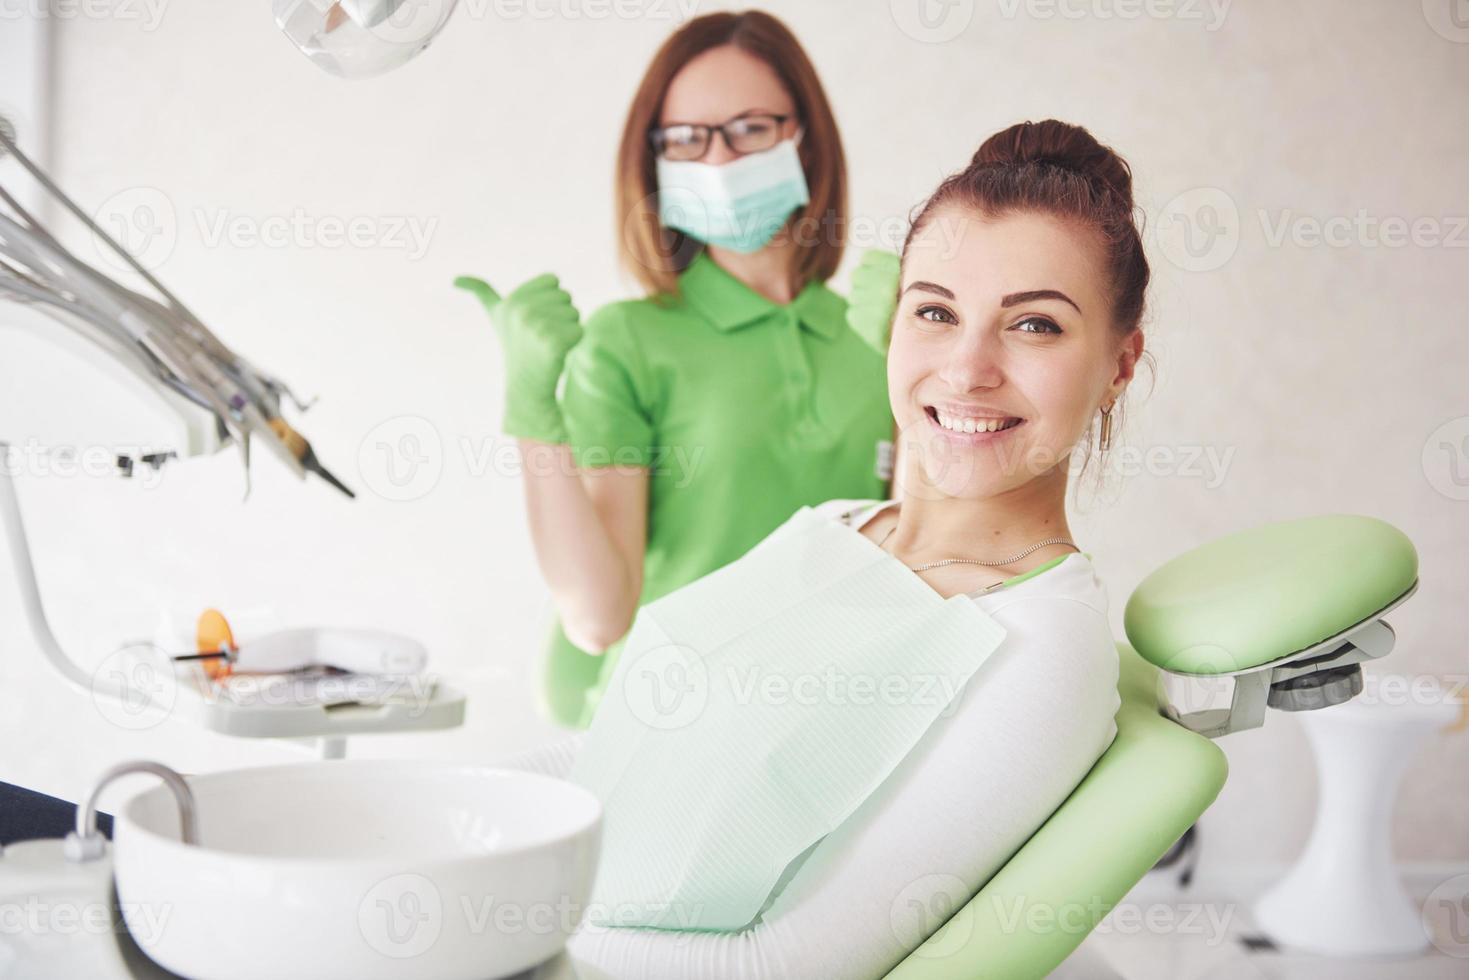 une jeune femme est satisfaite du travail du dentiste et lève son pouce photo